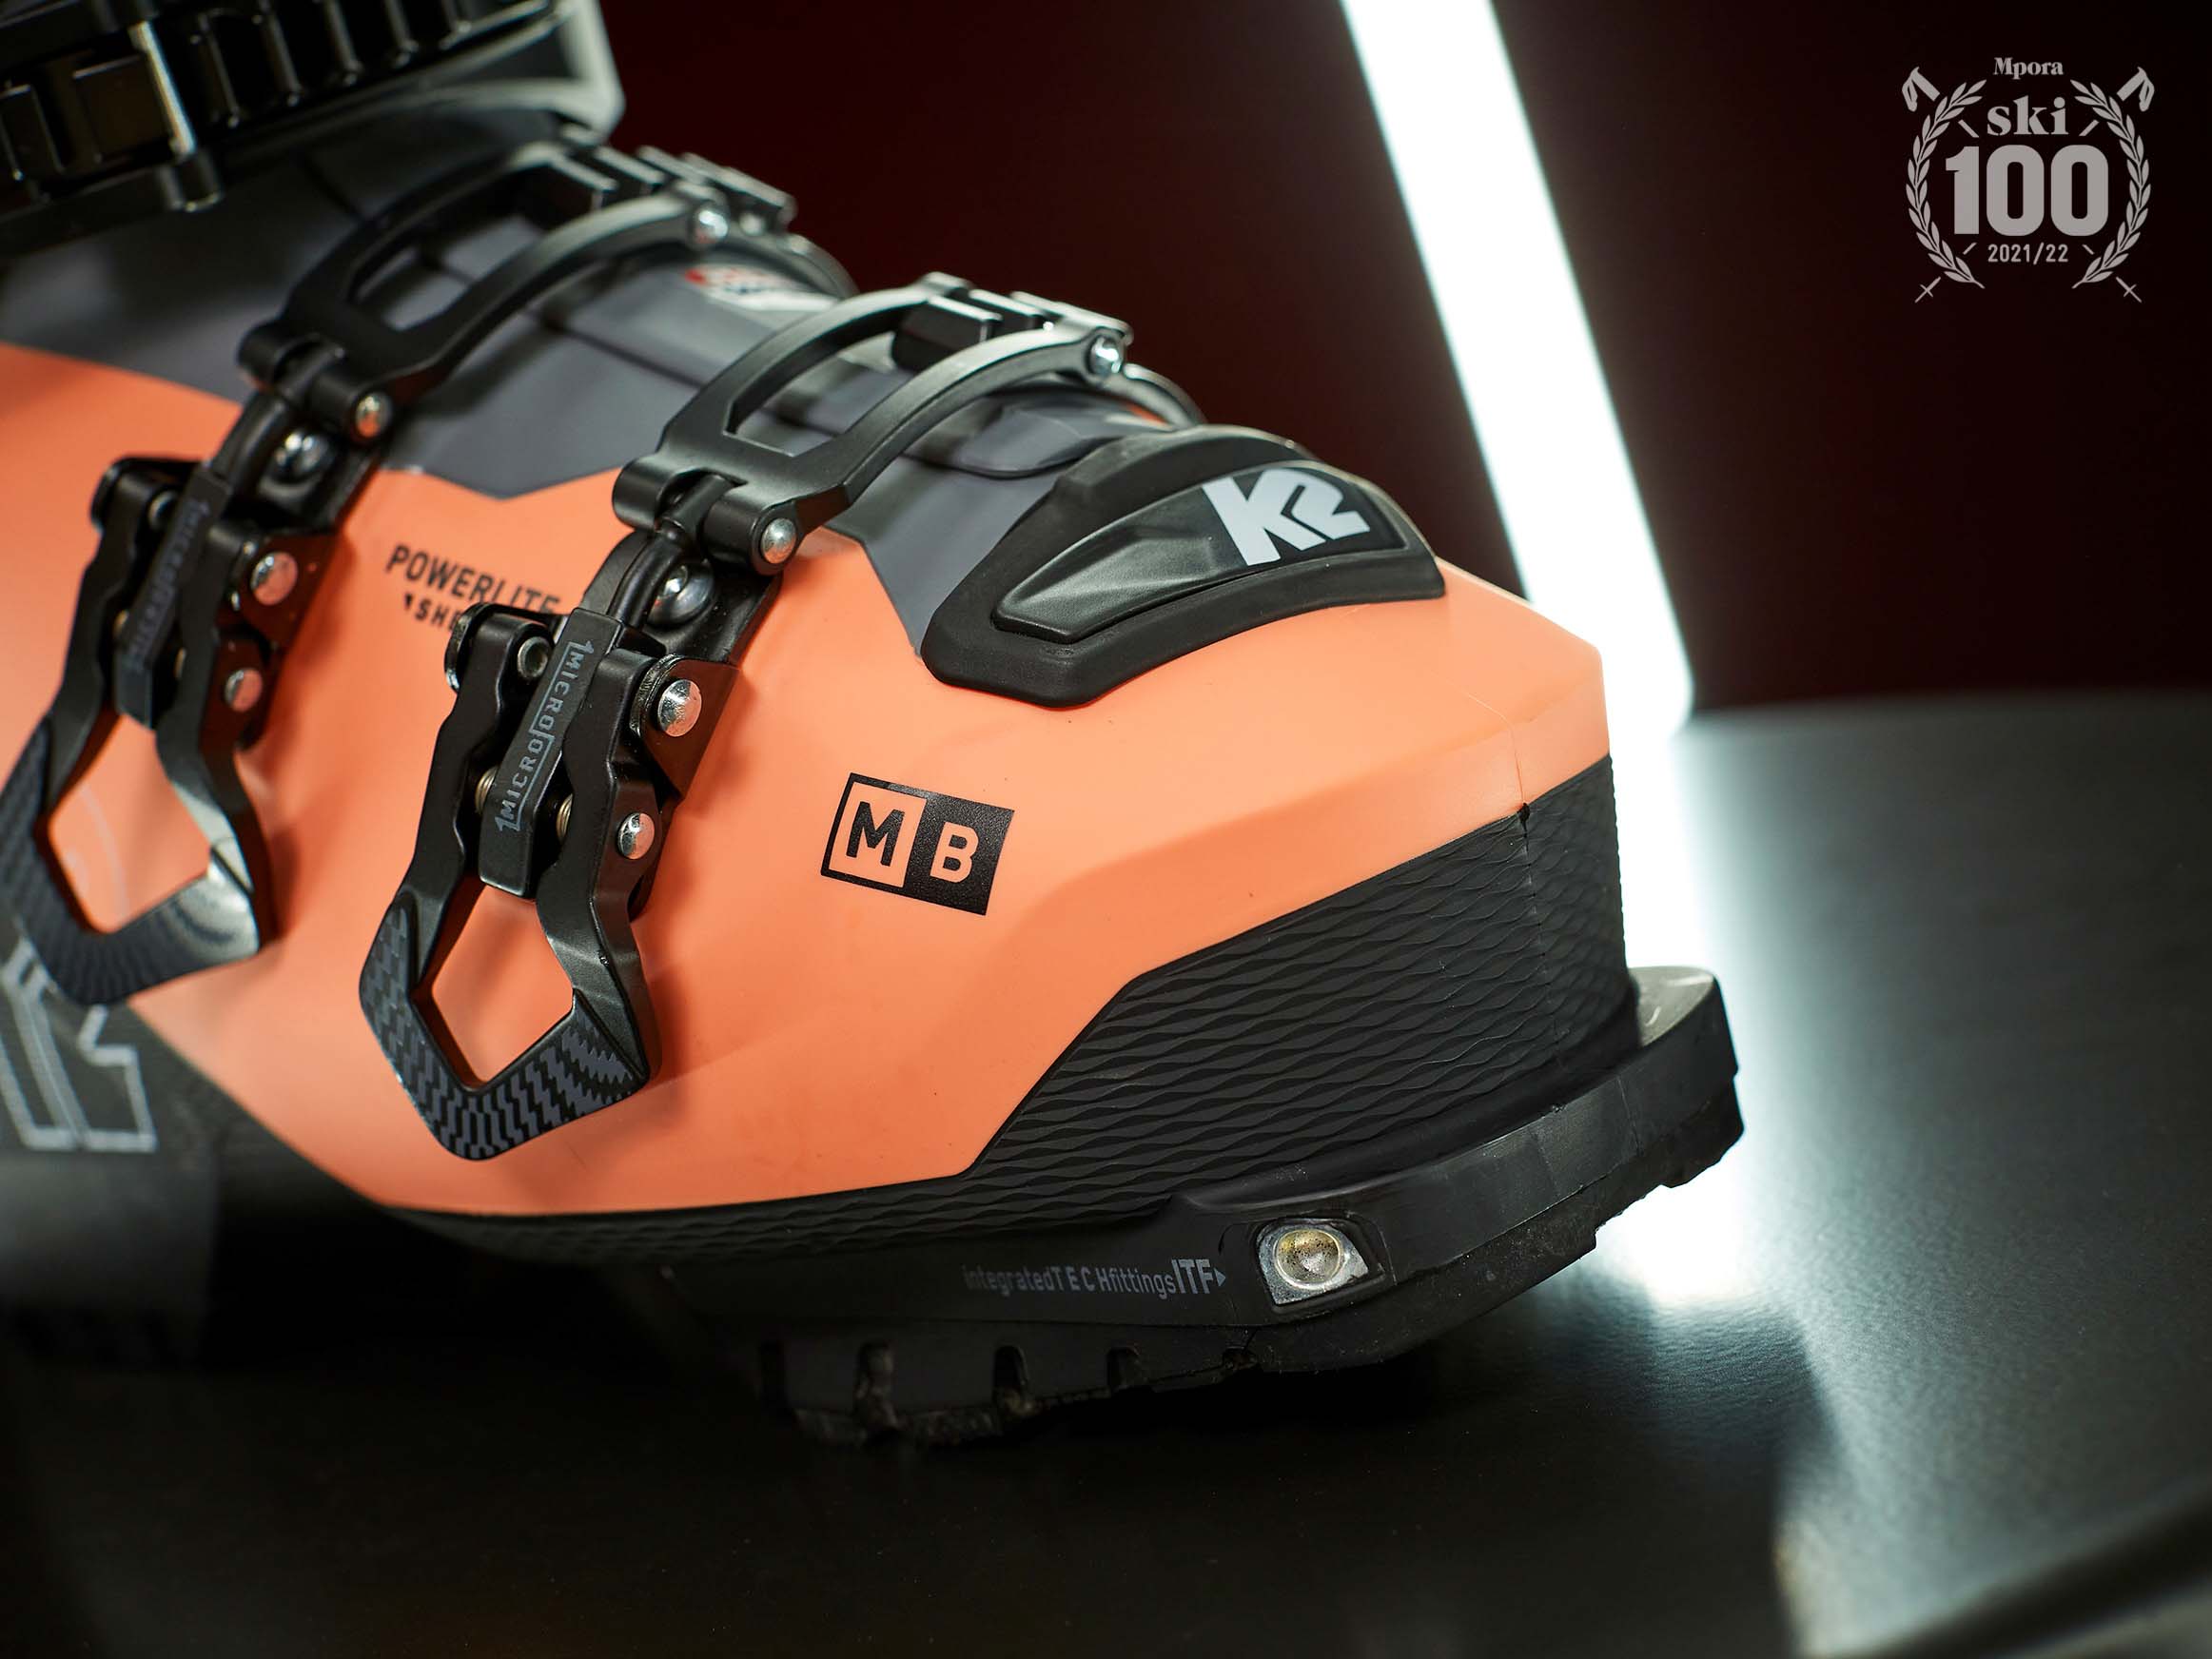 K2-Mindbender-110-Alliance-ski-boot-review-4